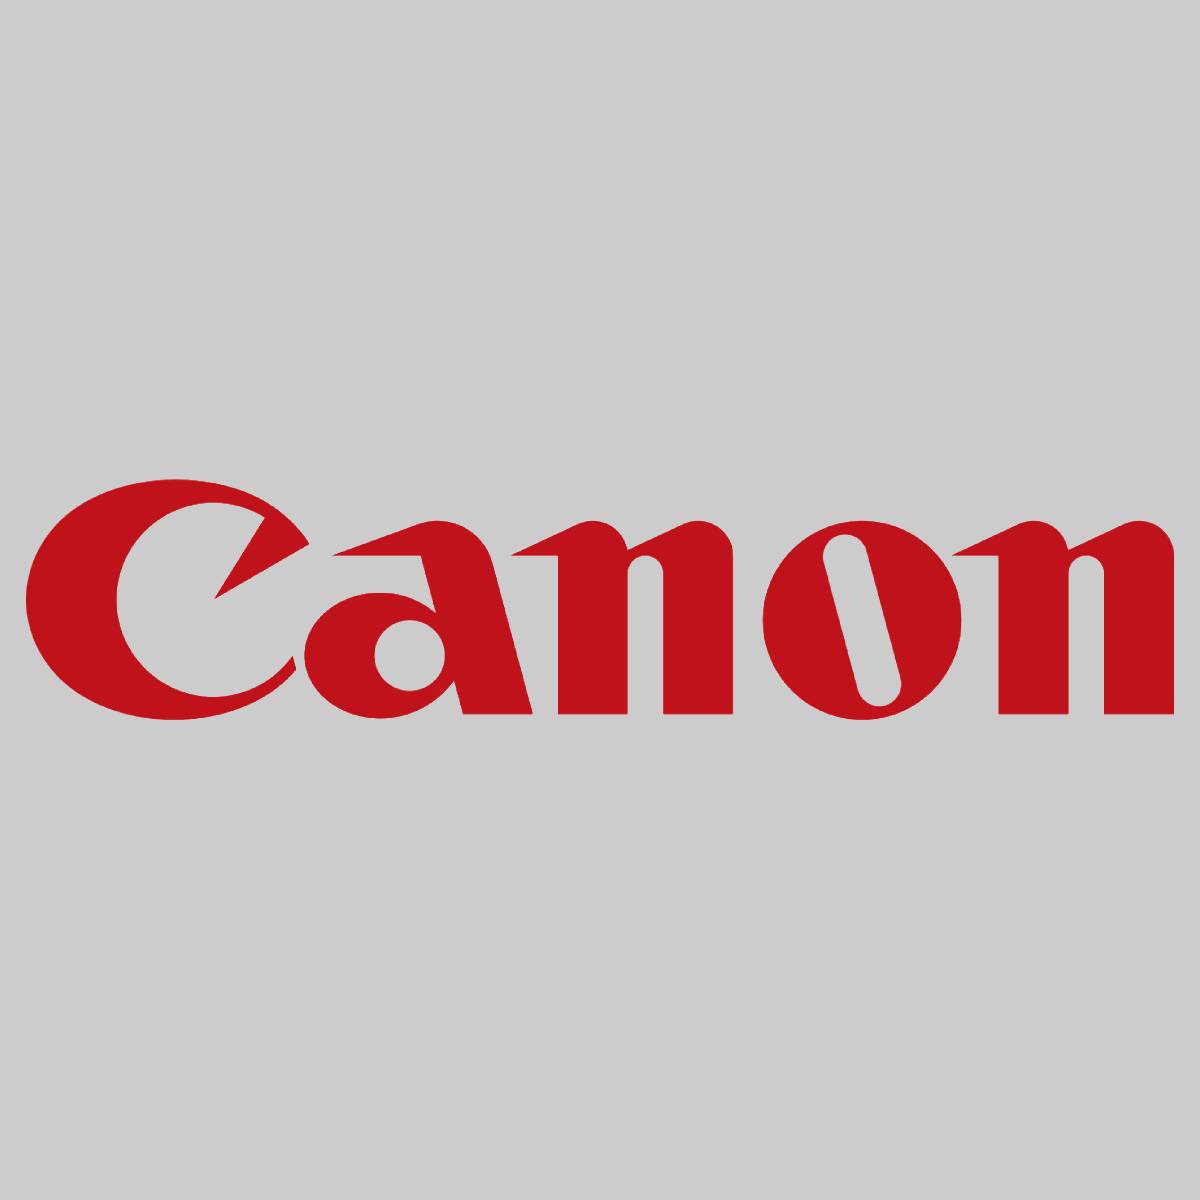 "Original Canon Cleaning Brush Roller FC5-9156-000 voor imagePRESS C6000 C7000